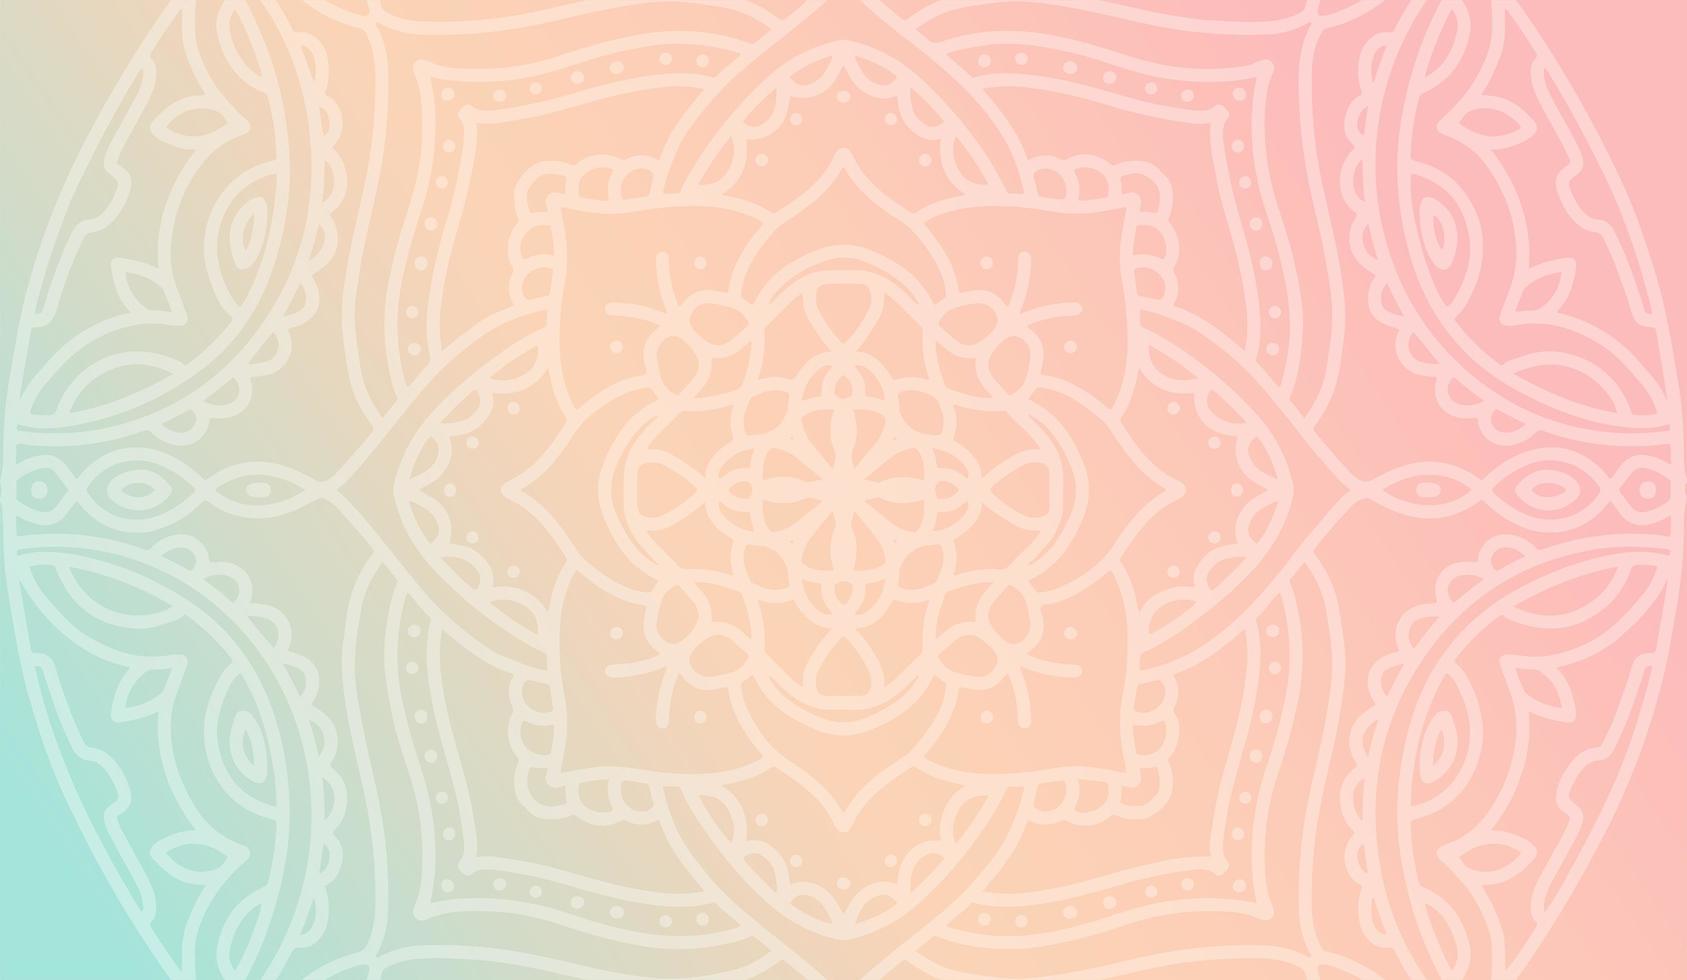 drömmande persikorosa gradienttapet med mandalamönster. vektor horisontell bakgrund för meditation affisch, banner för yogaskola